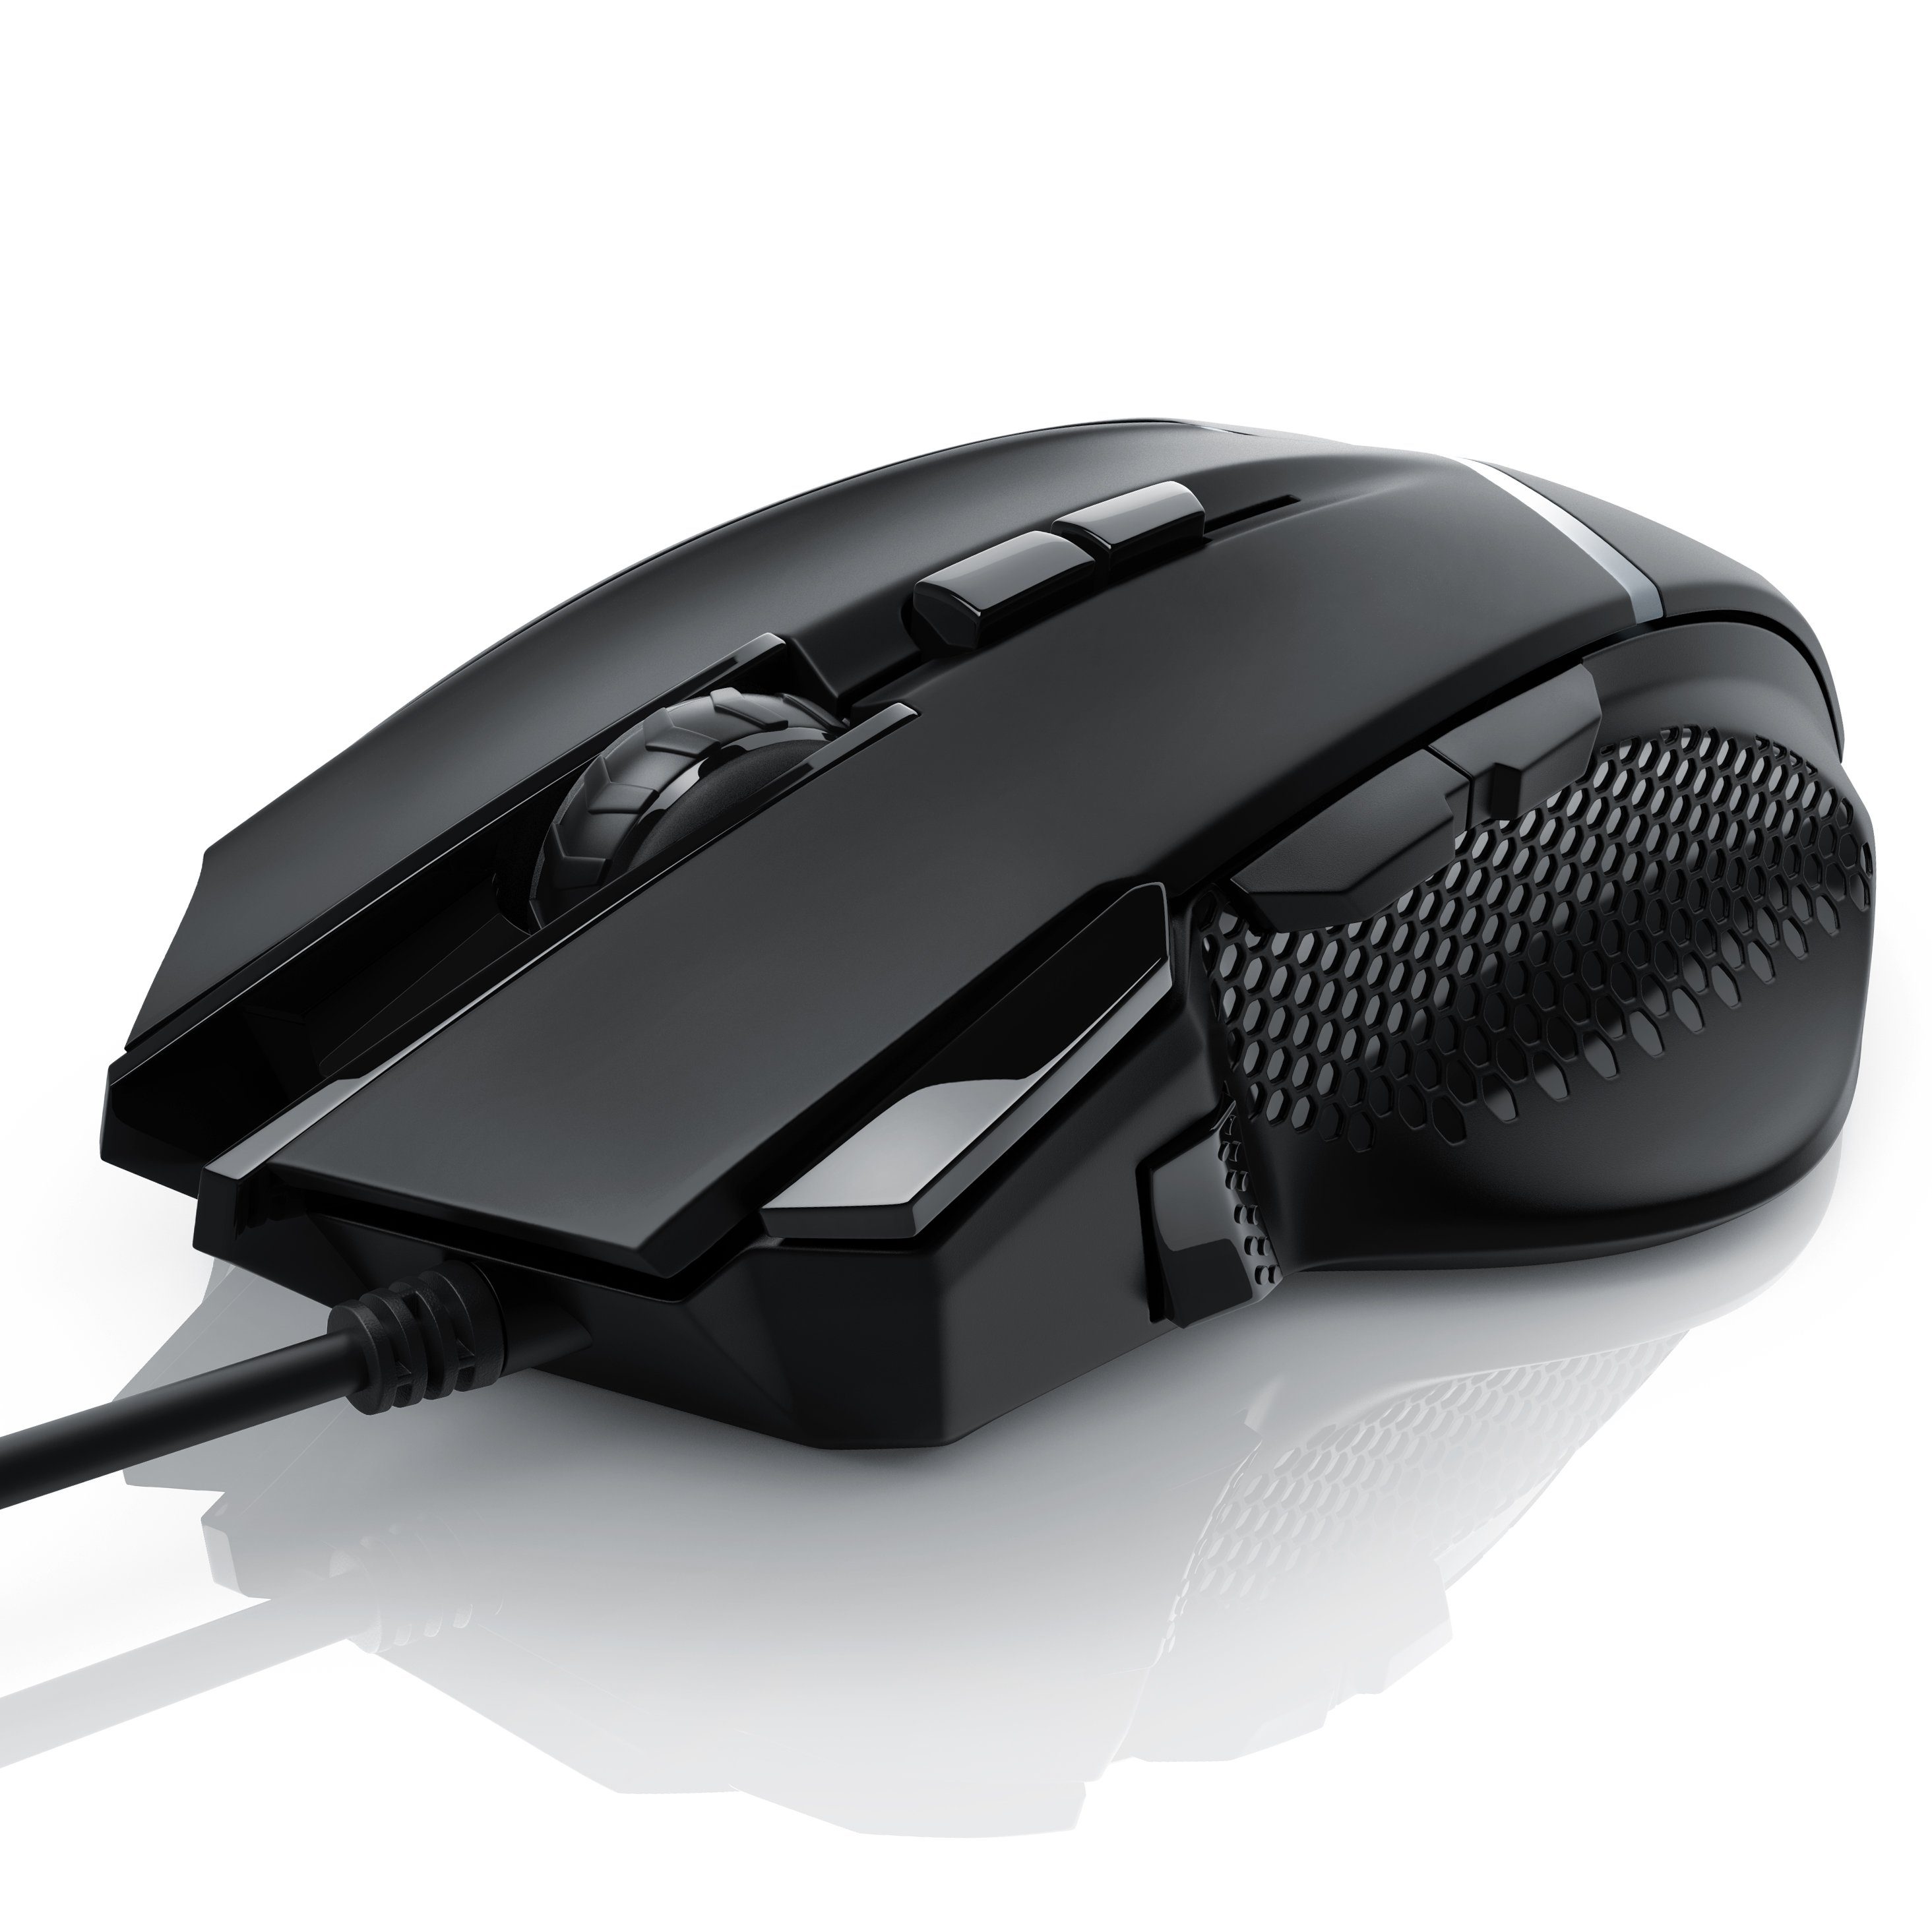 CSL Gaming-Maus (kabelgebunden, 500 dpi, 3200 dpi, wählbar, Mouse Gewichten) inkl. ergonomisch, Abtastrate